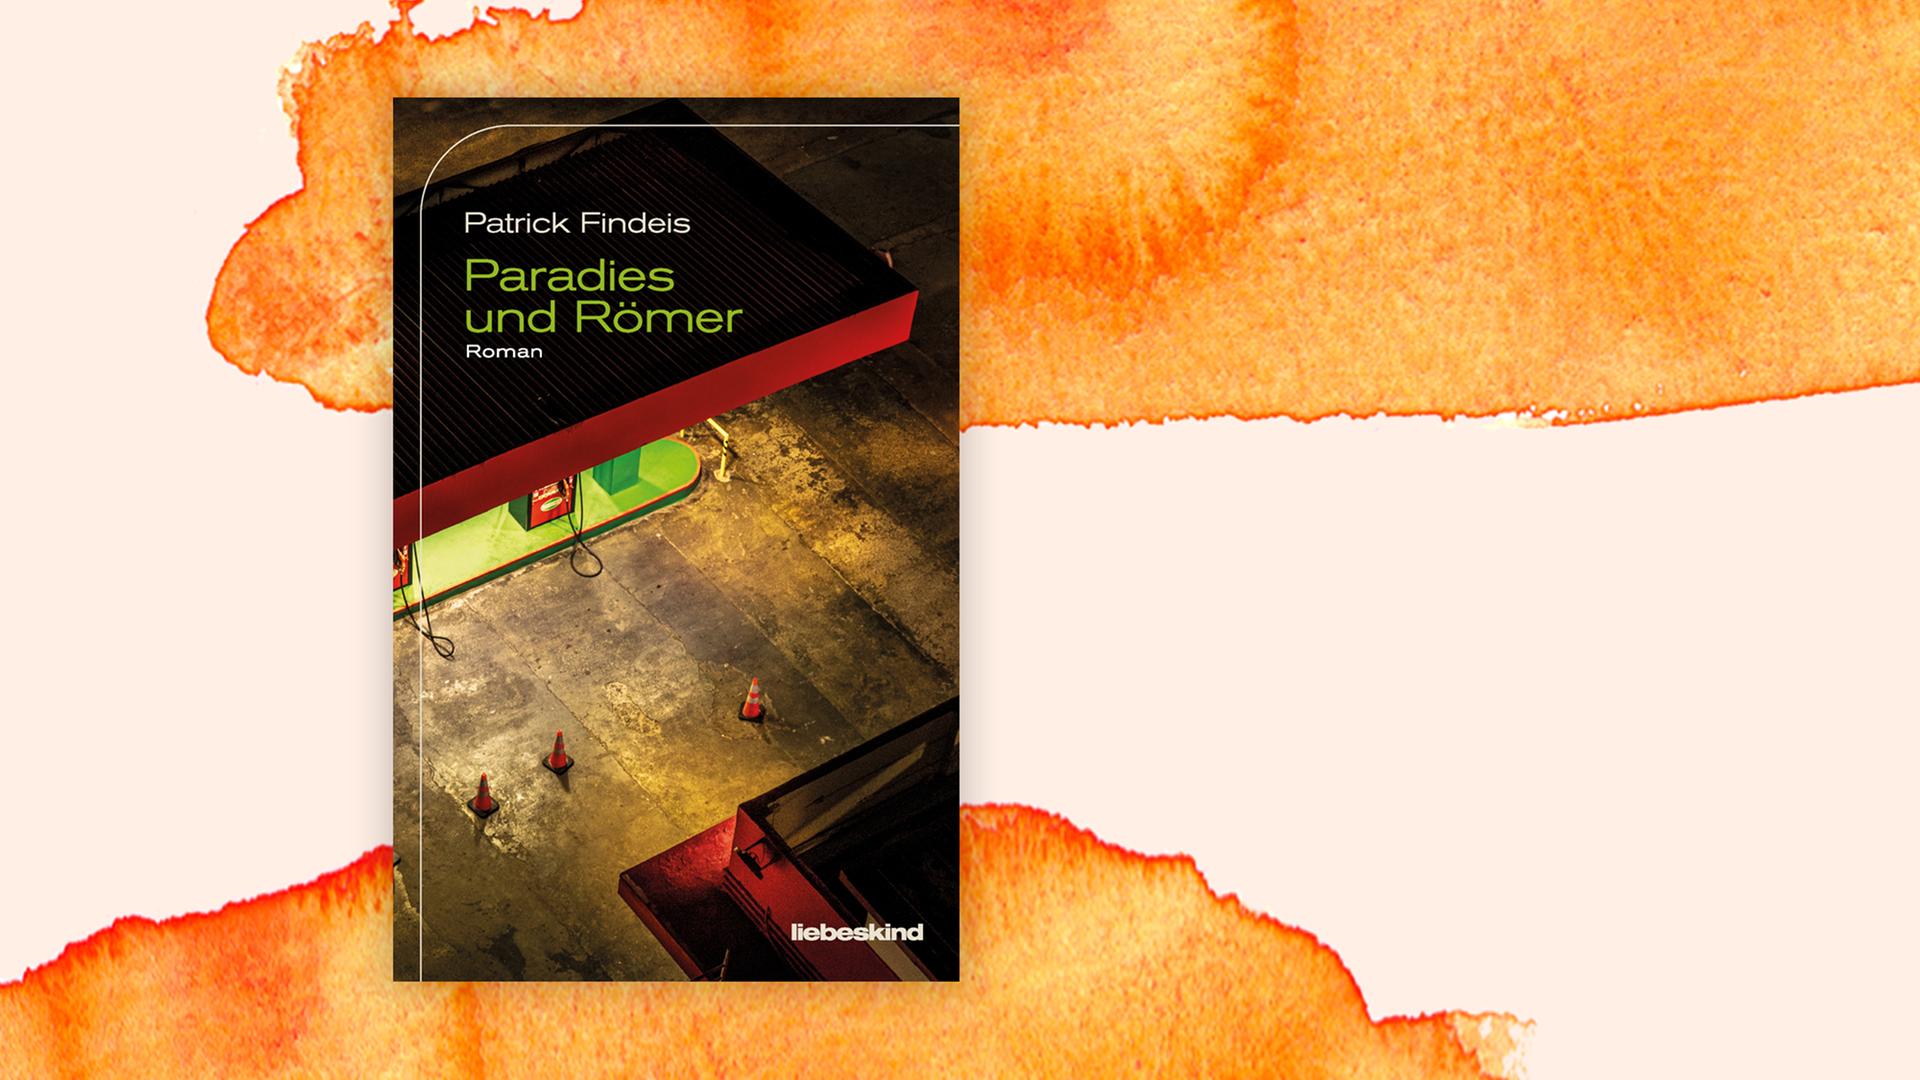 Das Cover des Romans von Patrick Findeis, "Paradies und Römer", auf orange-weißem Hintergrund. Auf dem Cover sind bei Nacht drei Pylonen auf einem hell erleuchteten Tankstellen-Gelände zu erkennen. 